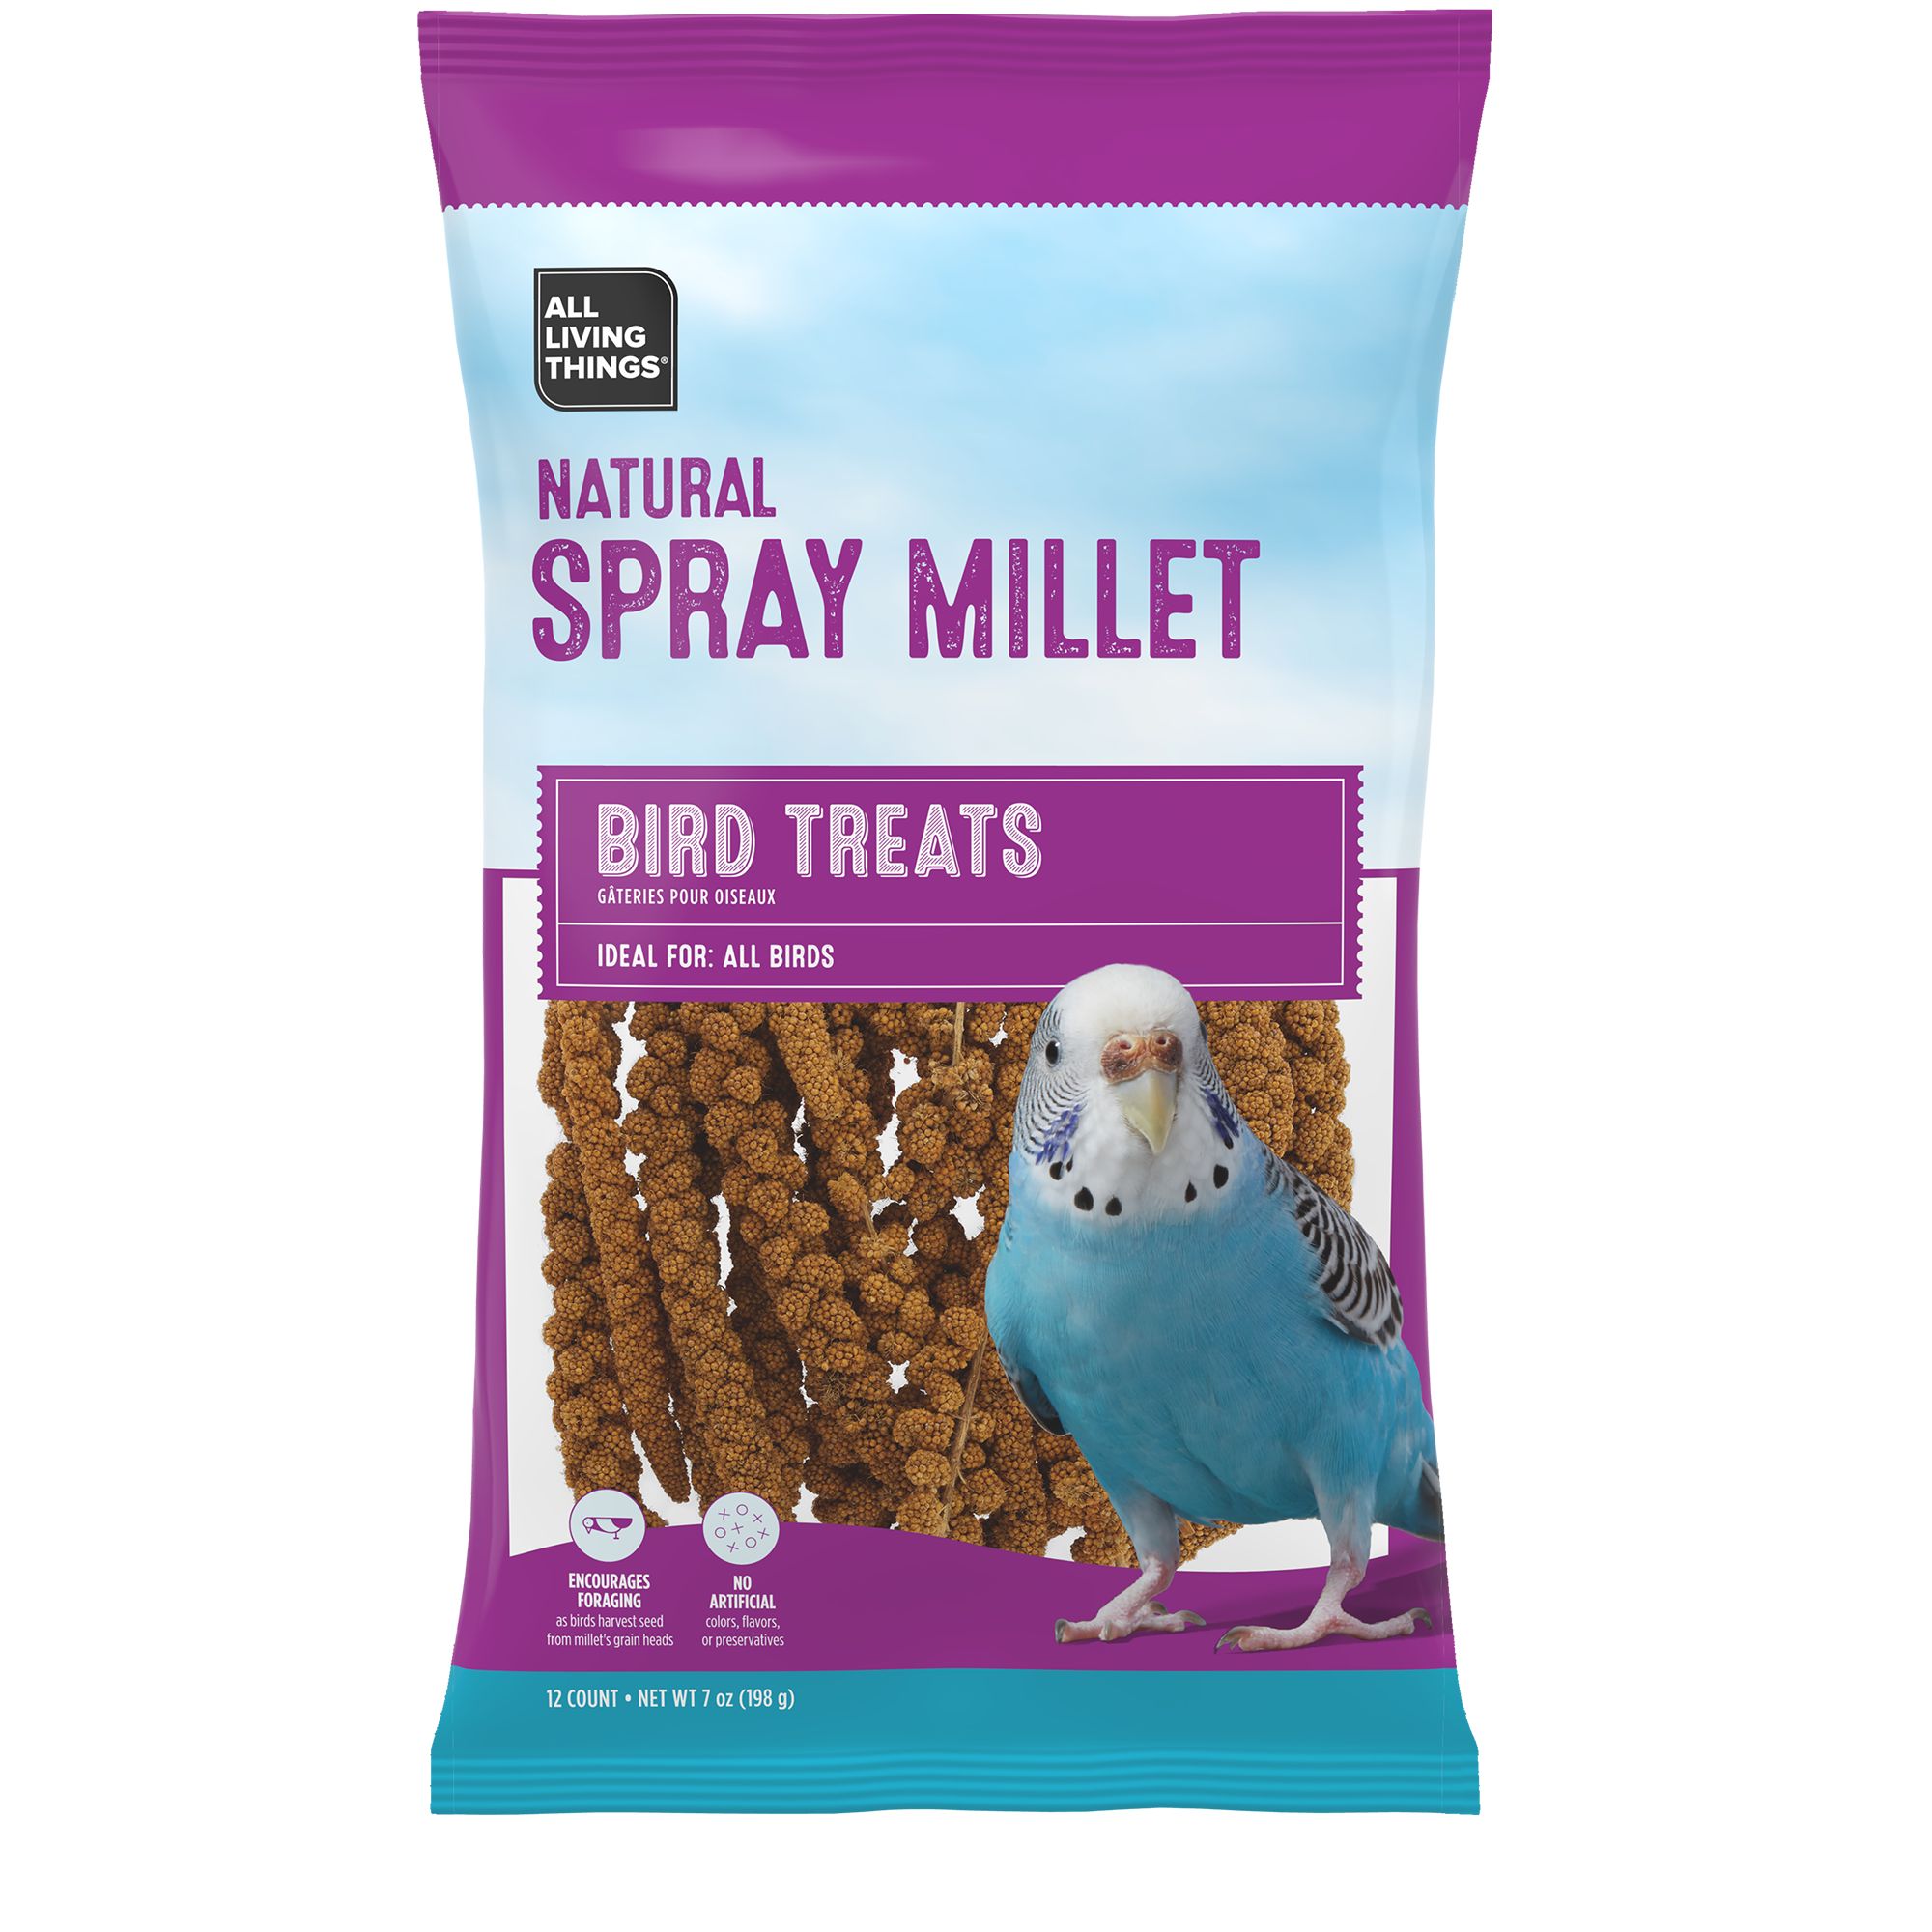 All Living Things® Spray Millet Bird Treat